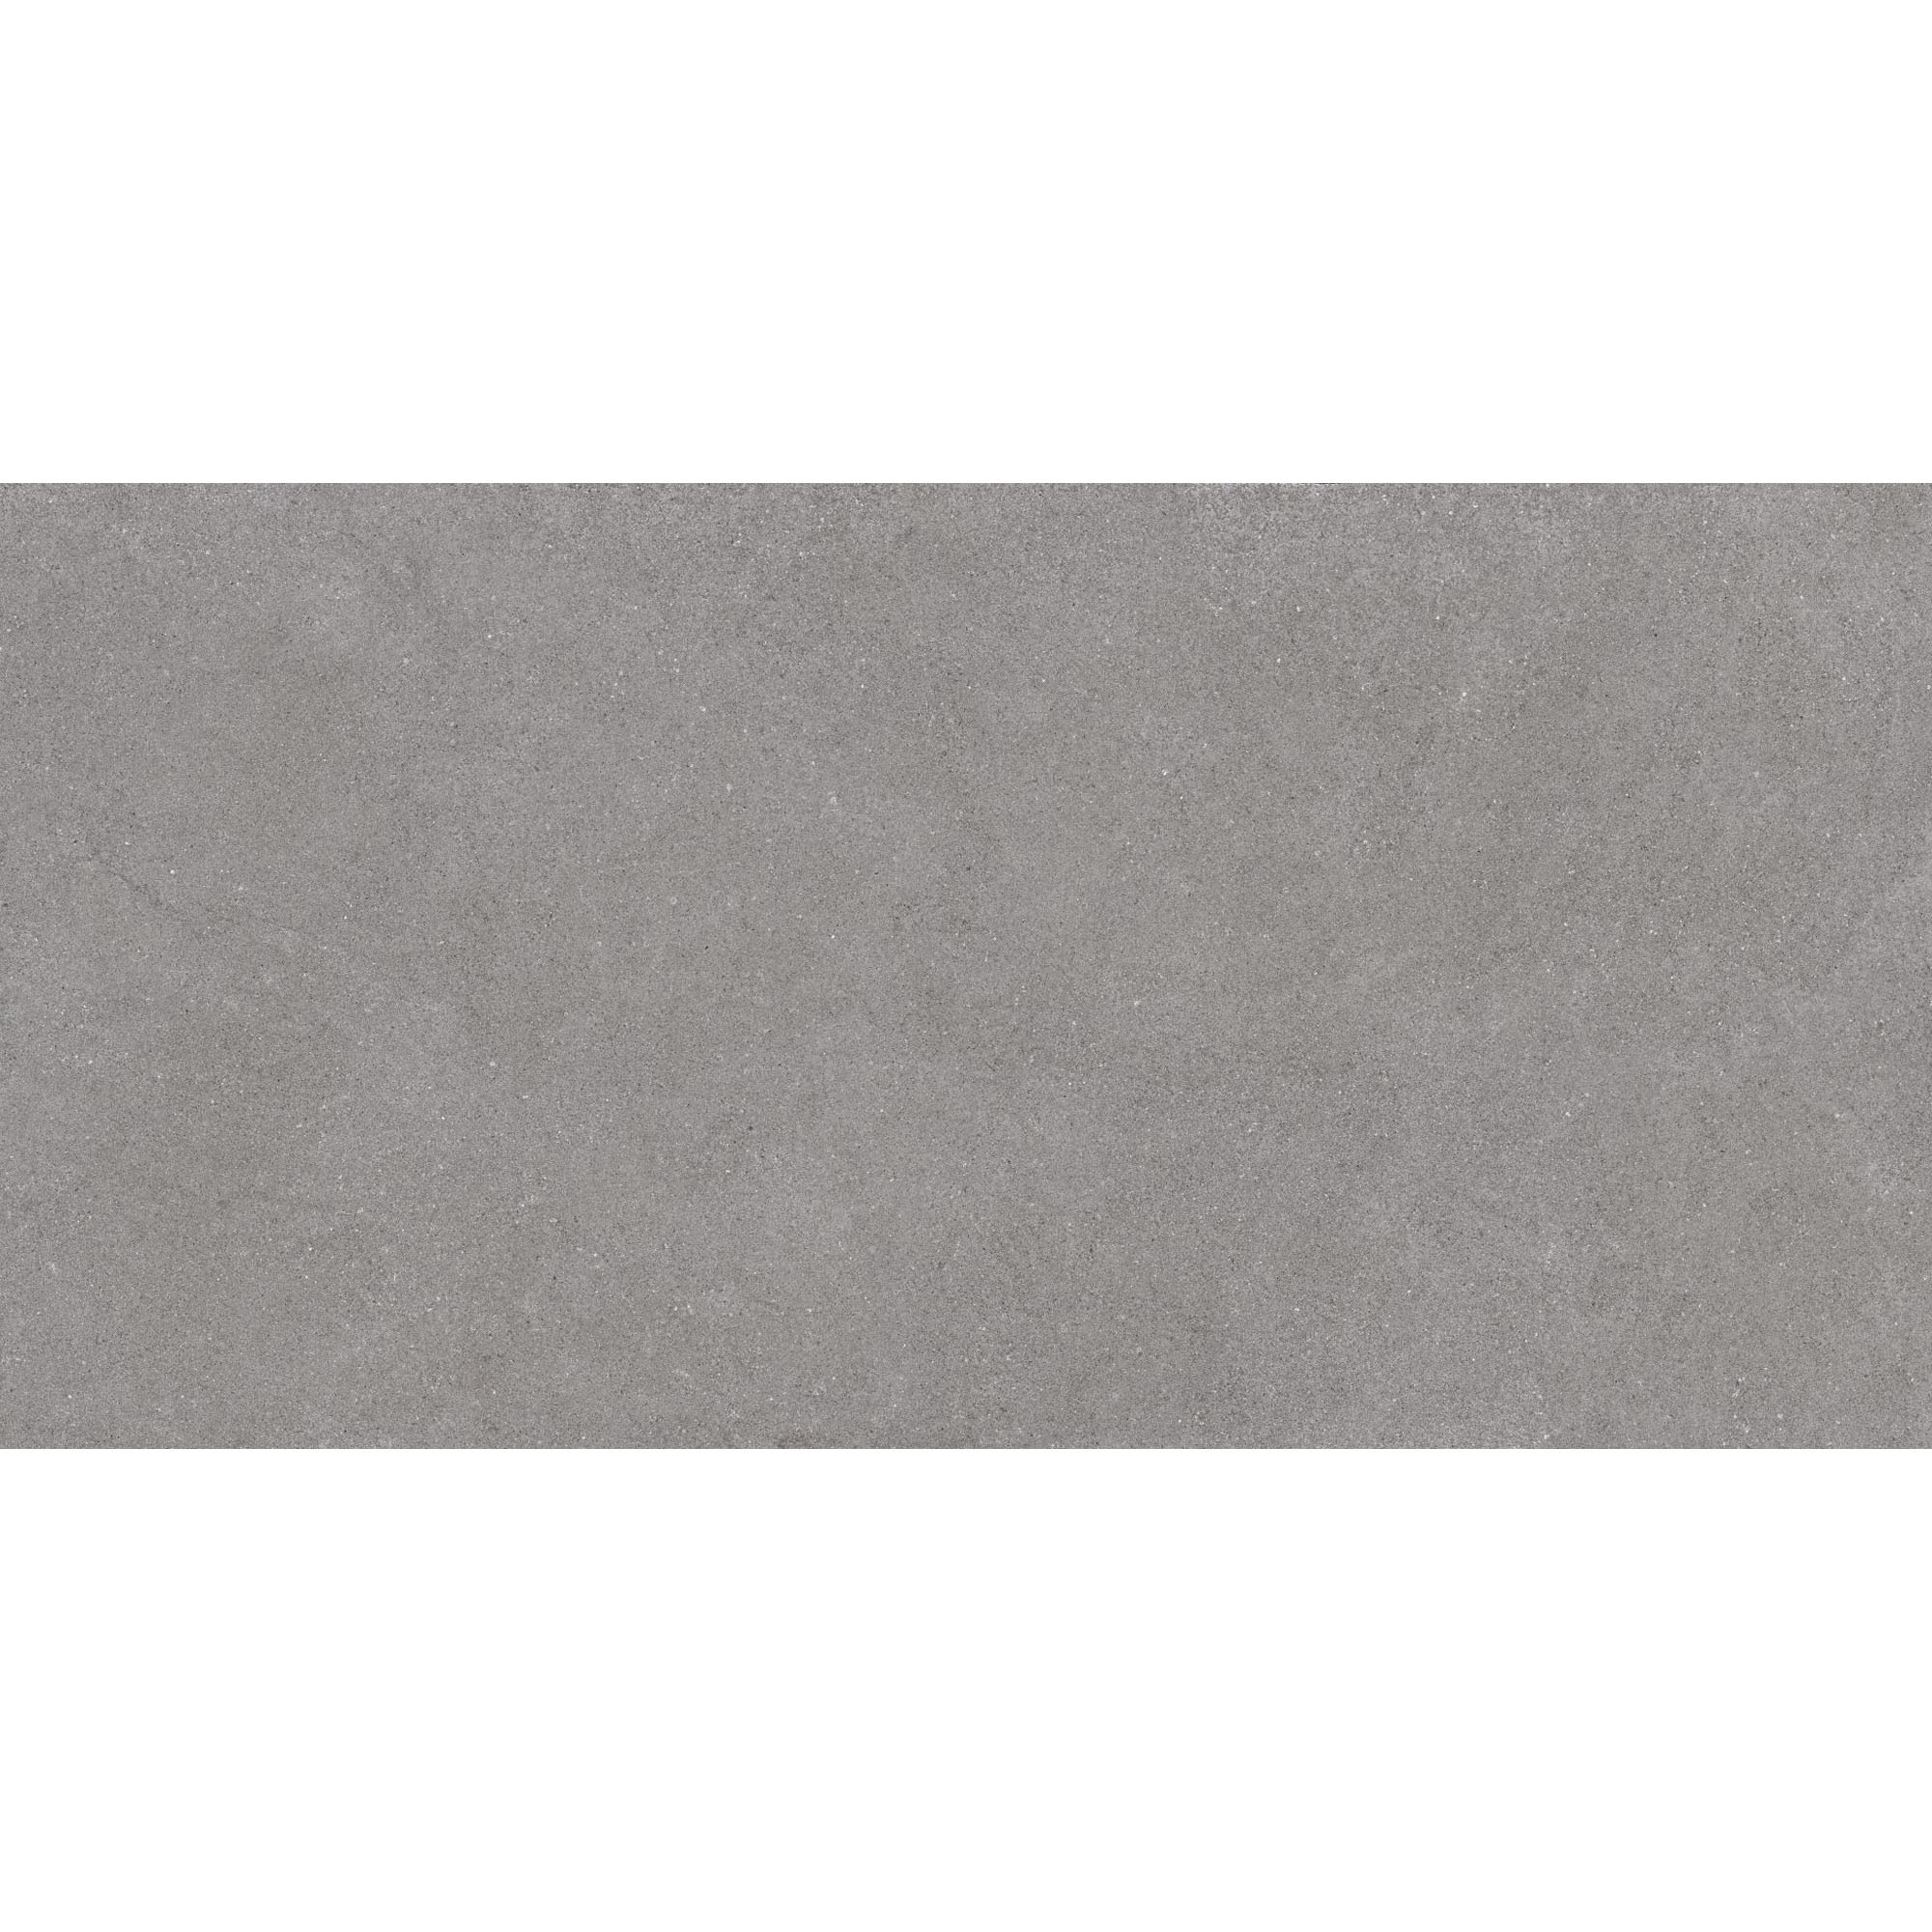 Плитка Estima Luna LN02 39209 80x160 см неполированный серый плитка estima vision vs02 неполированный серый 60x60 см